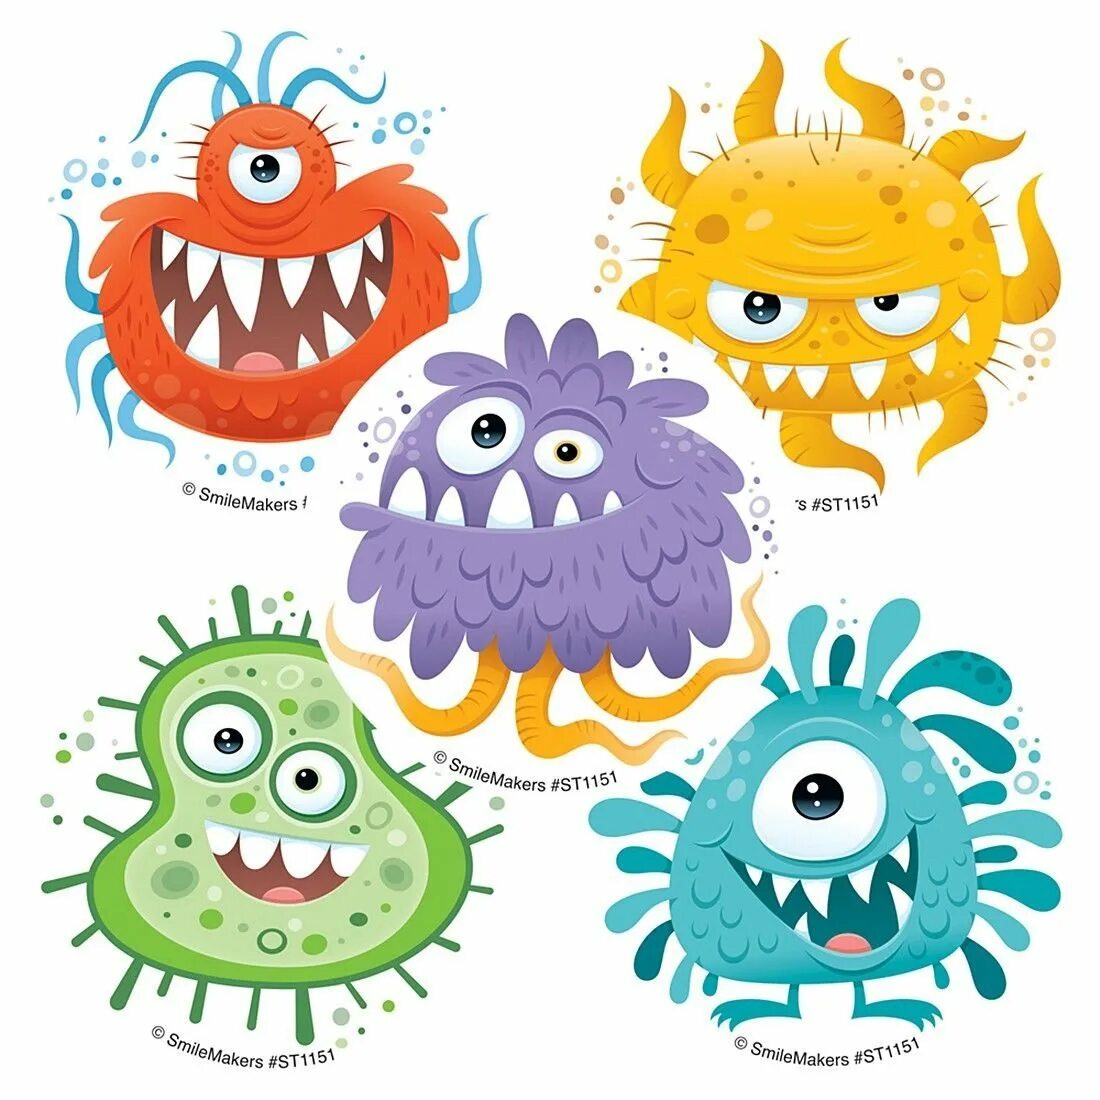 Микробы вирусы бактерии. Вирусы бактерии микробы. Микробы вирусы бактерии для детей. Микробы мультяшные. Изображение микроба для детей.